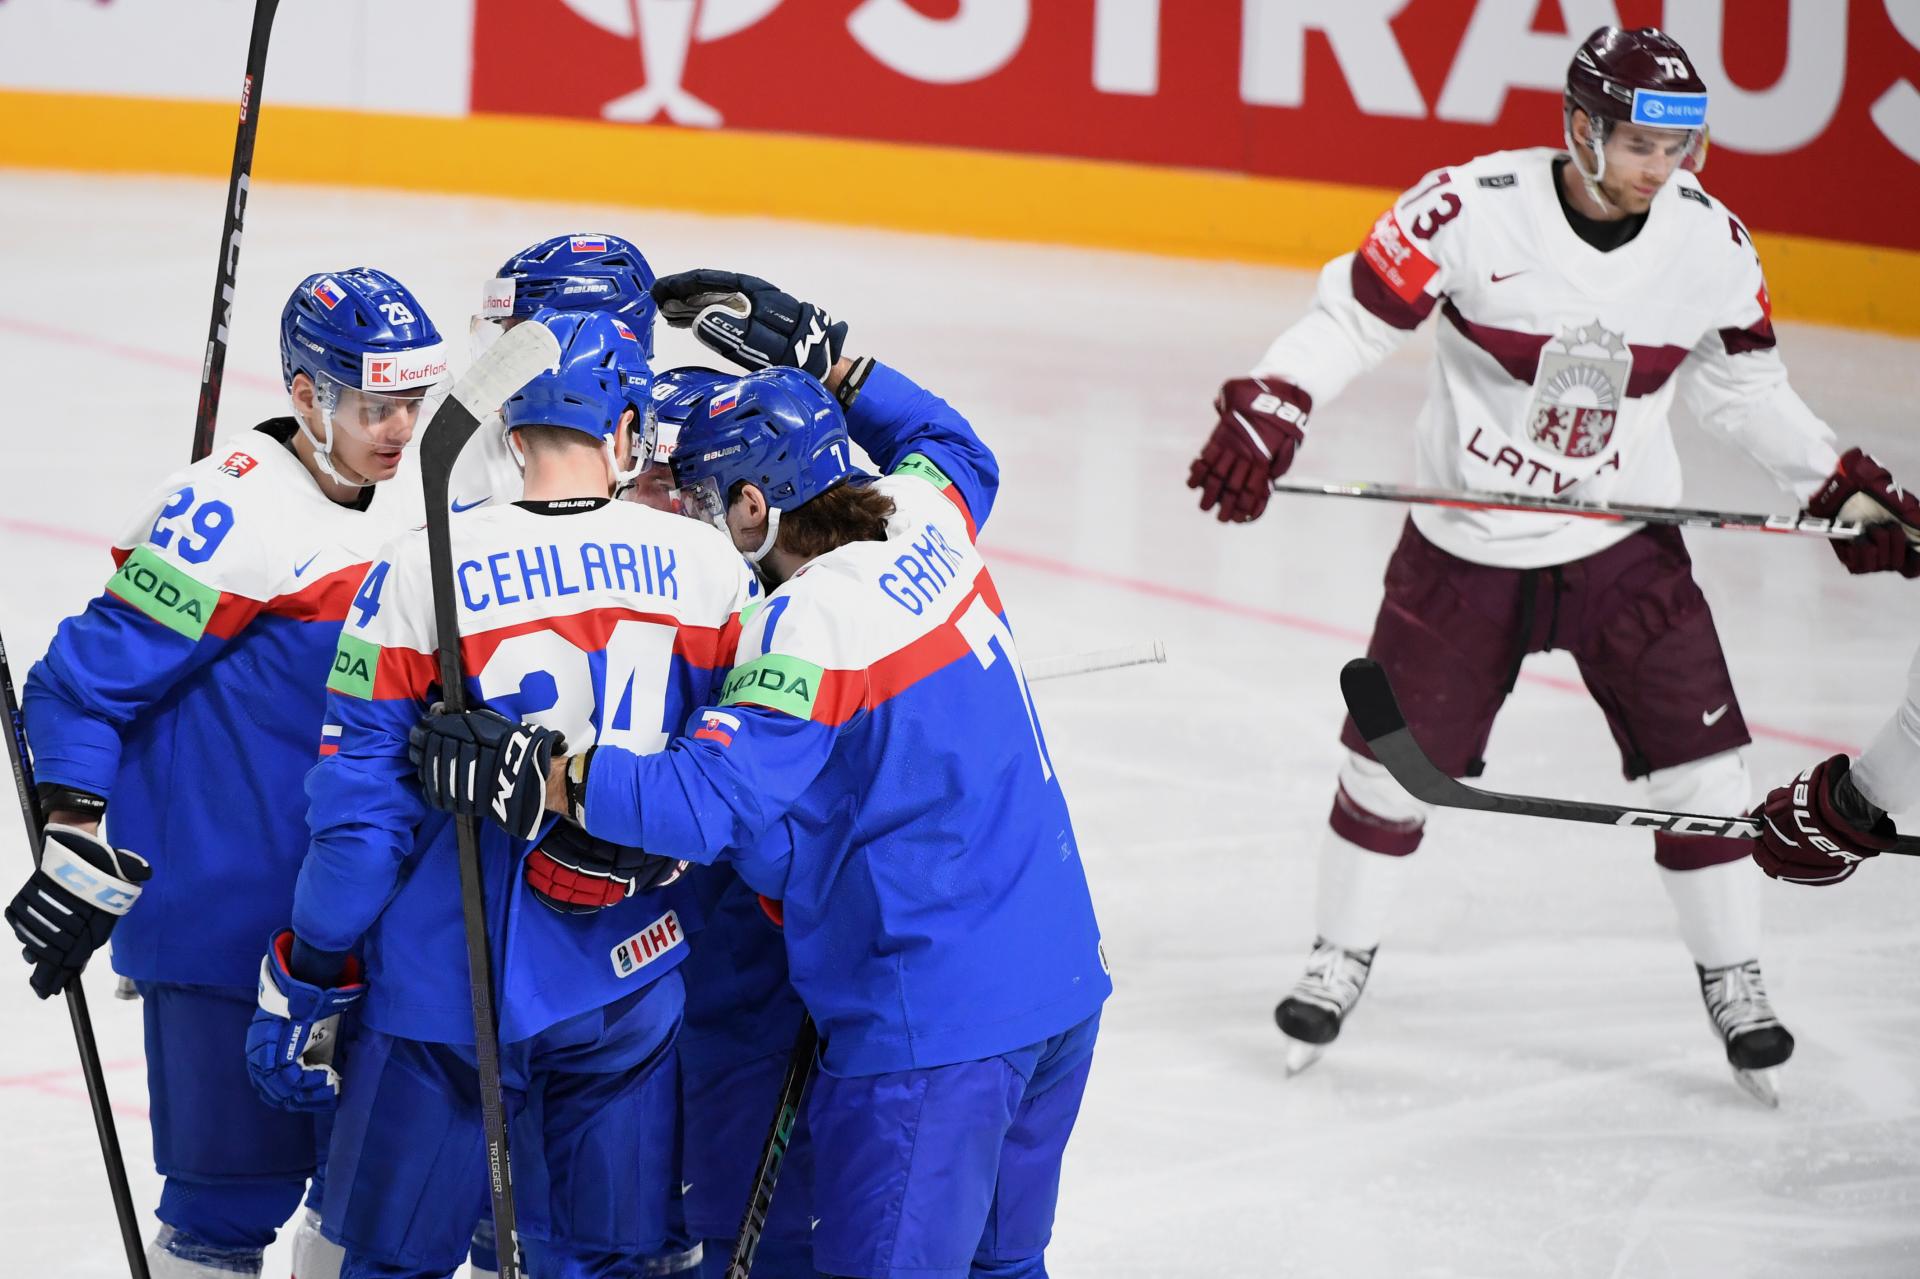 Slovenskí hokejisti zdolali Lotyšov, rozhodol kapitán. Bol to veľmi ubojovaný zápas, hodnotí Hrivík